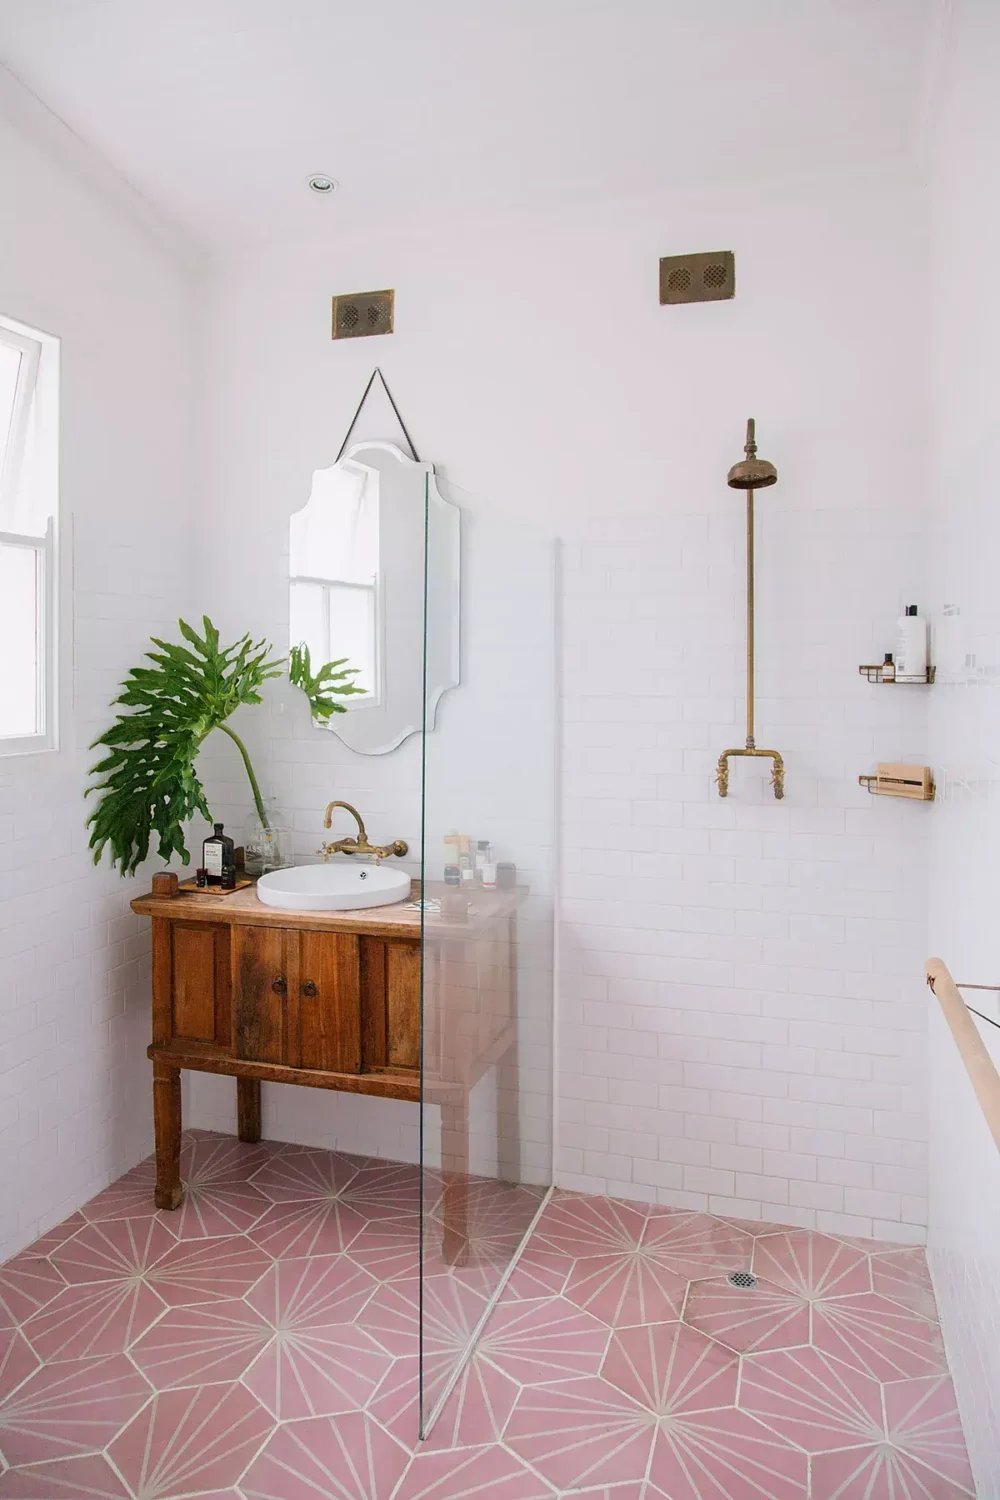 Дизайн маленькой ванной комнаты: идеи планировки и ремонта